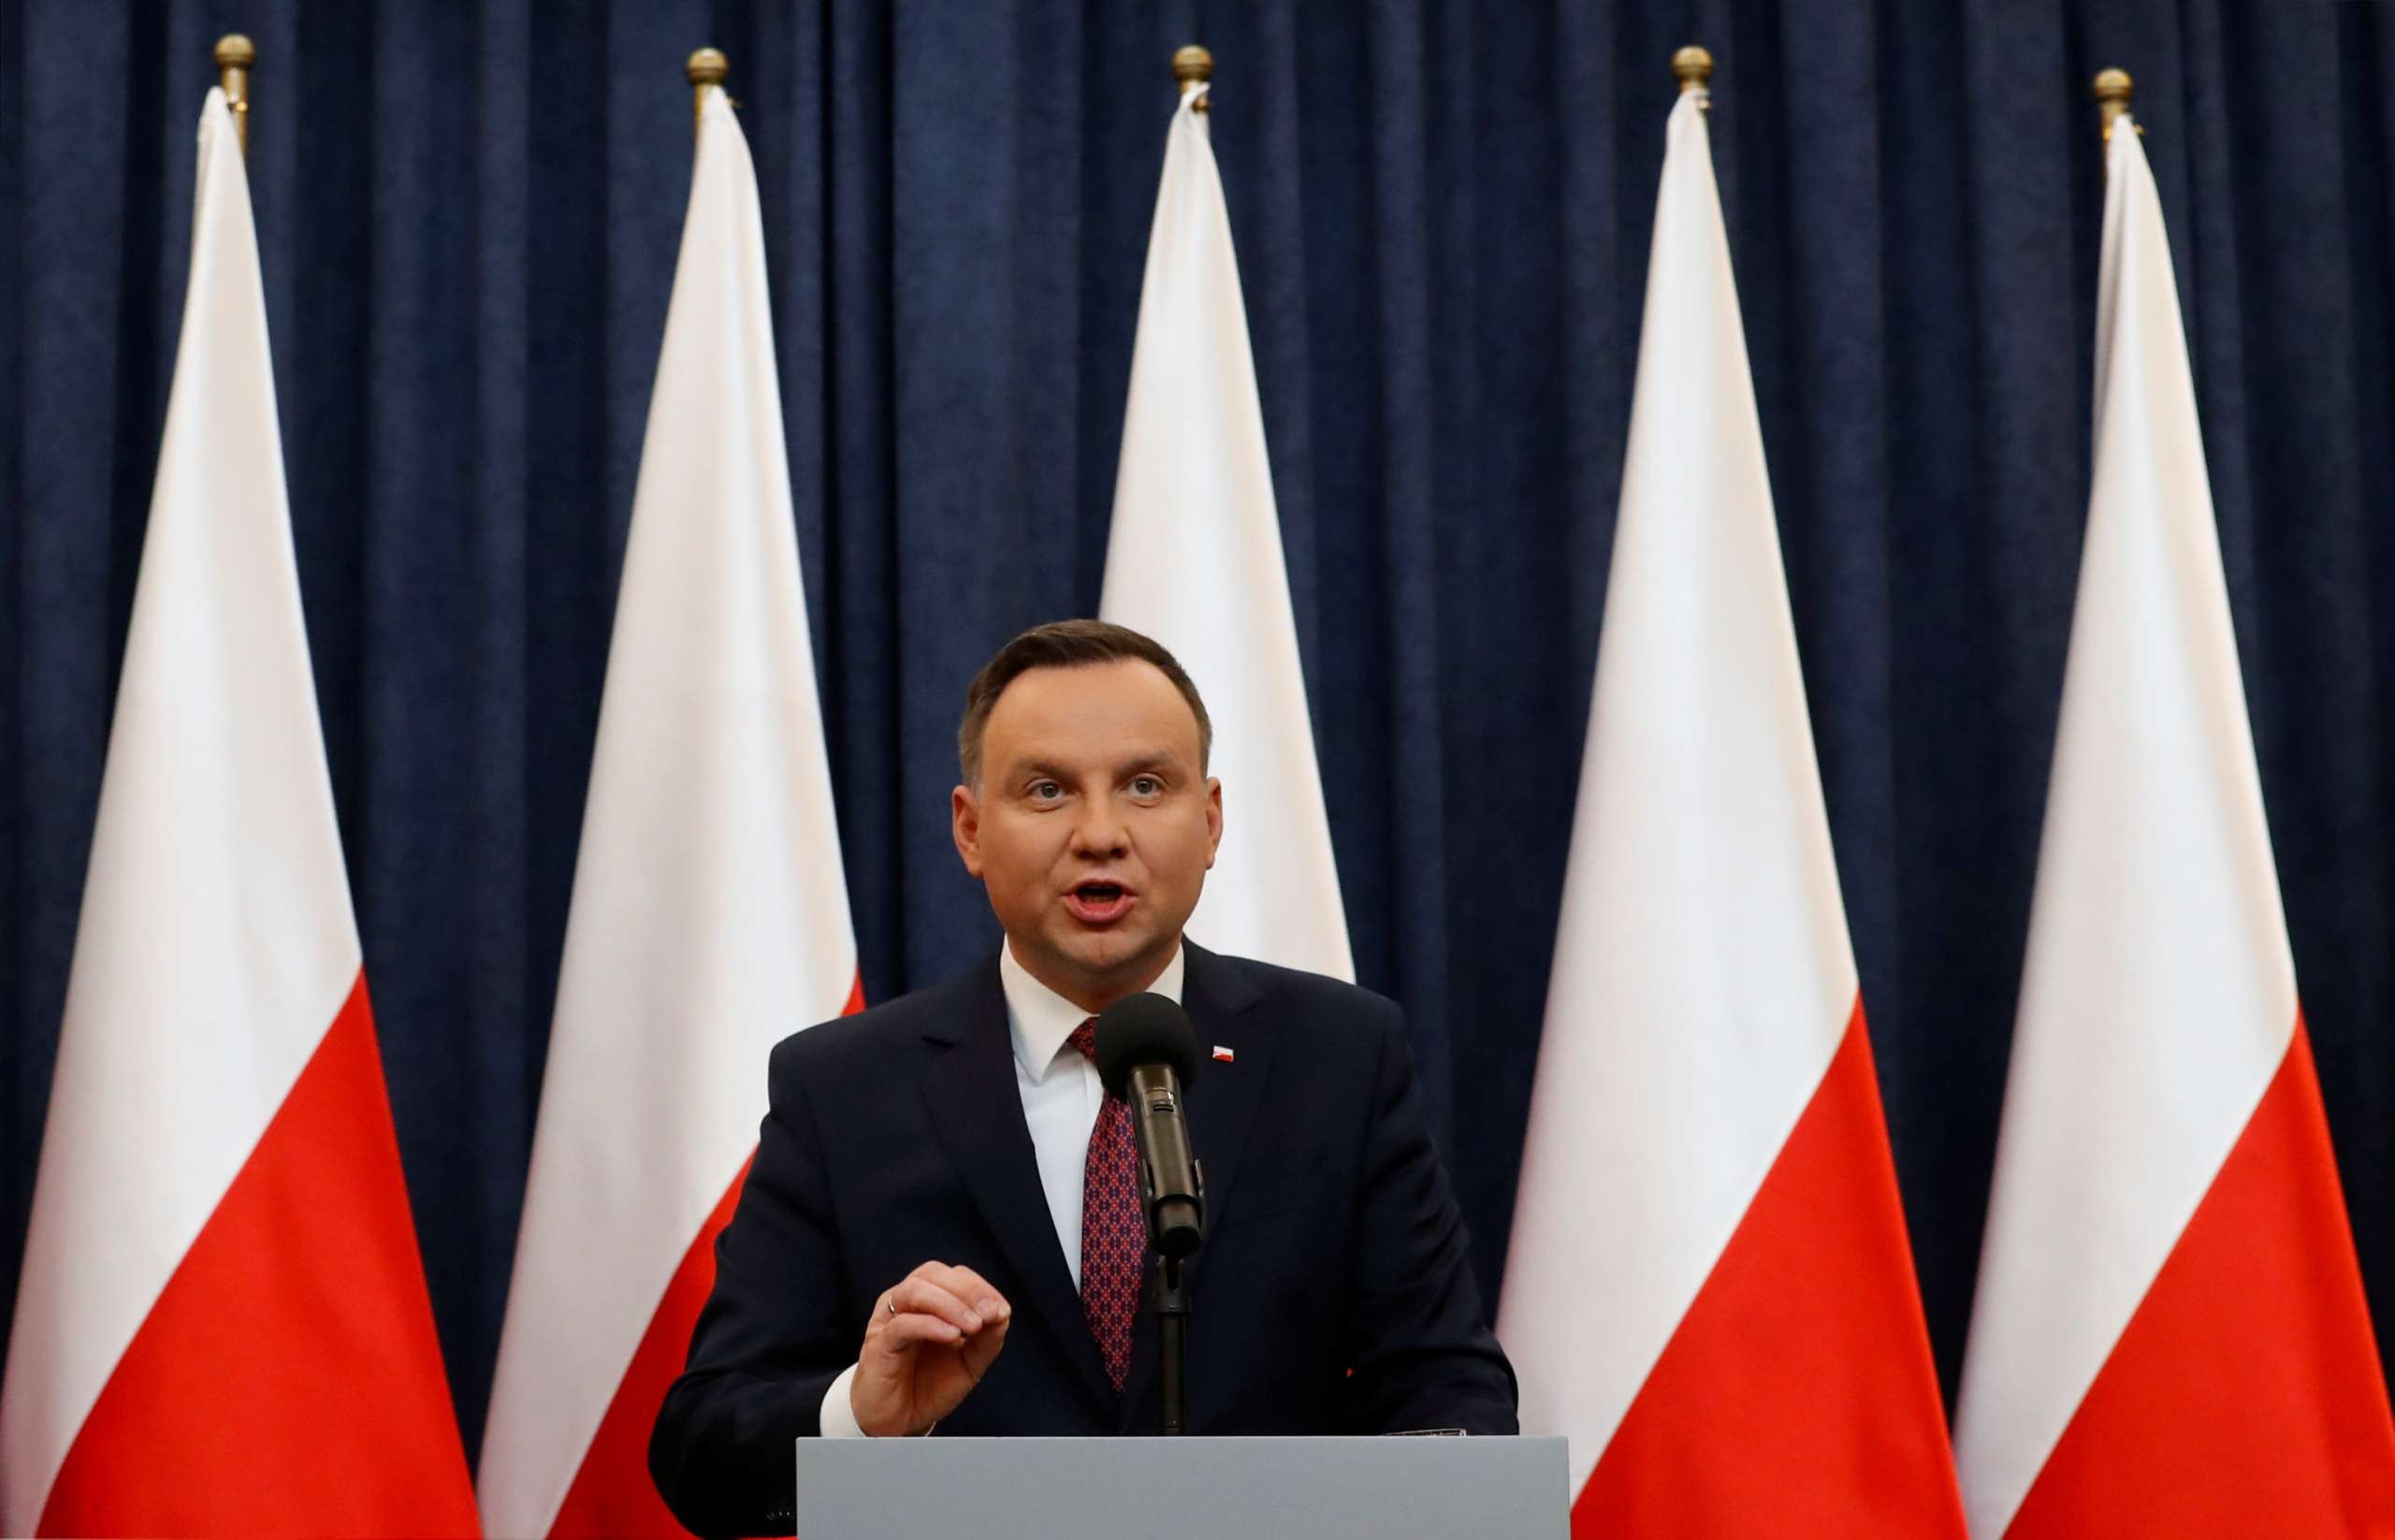 El primer ministro polaco, Andrej Duda, en una imagen de archivo.